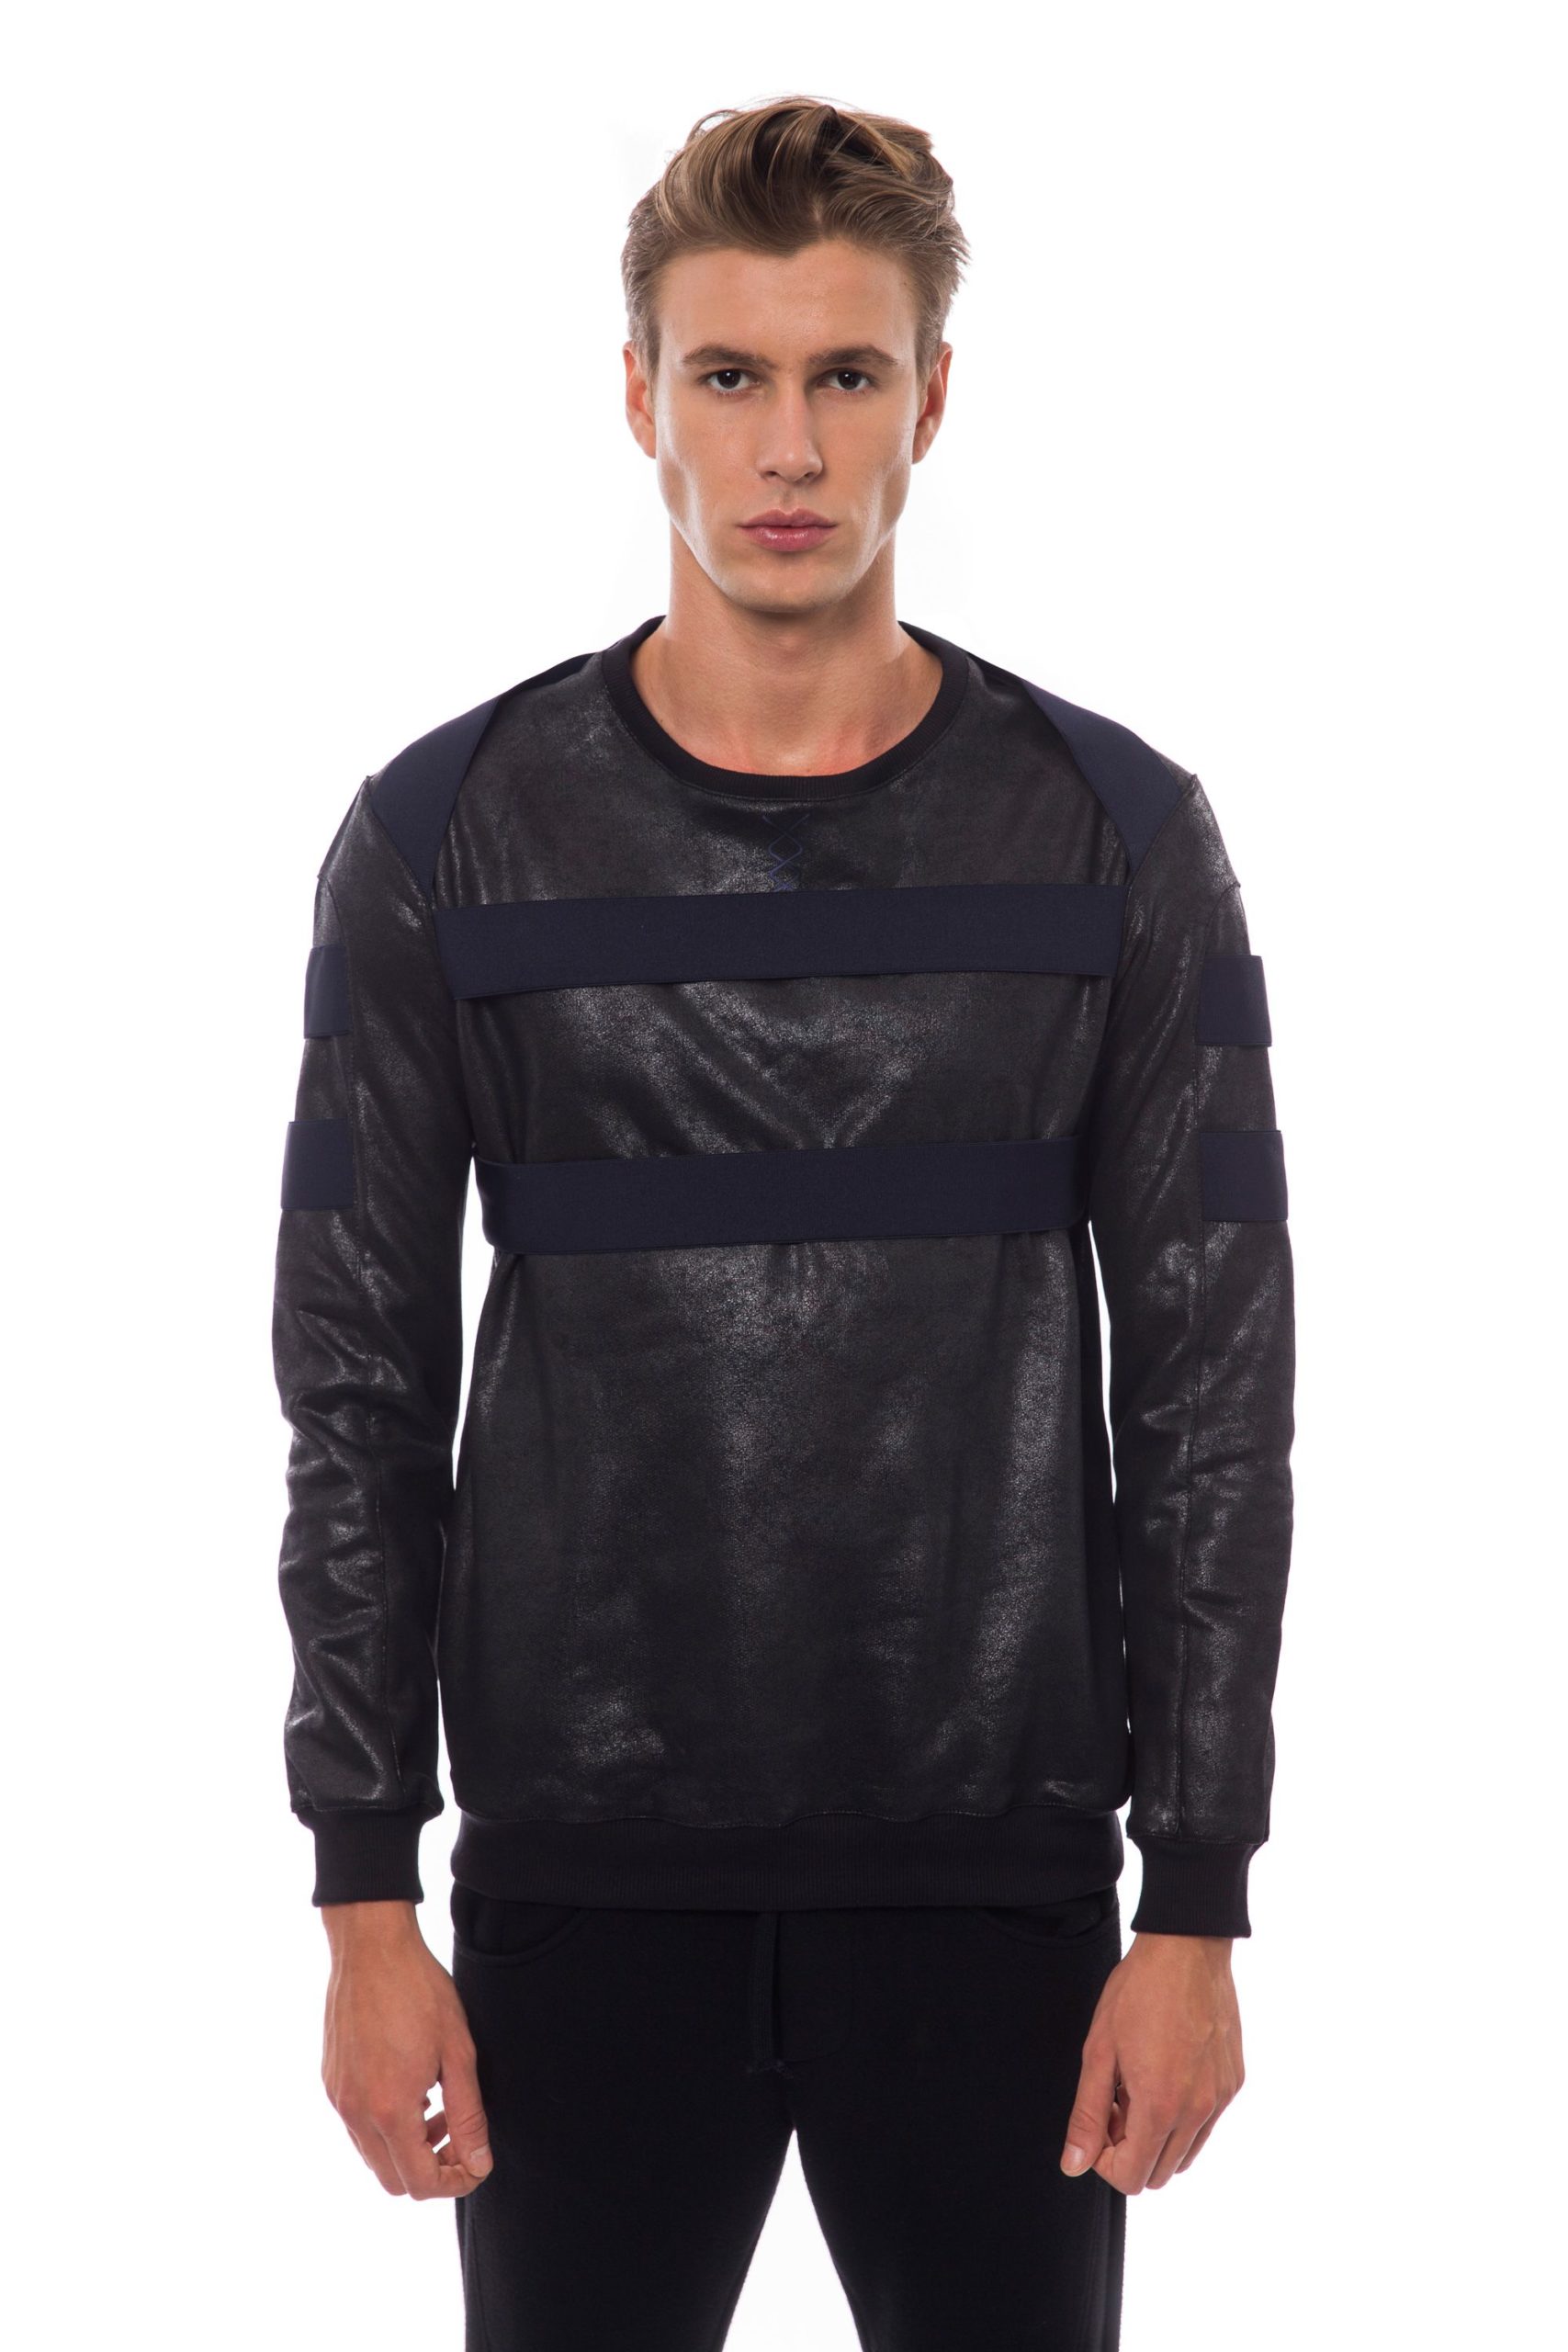 Nicolo Tonetto Men's Nero Sweater Black NI817123 - M